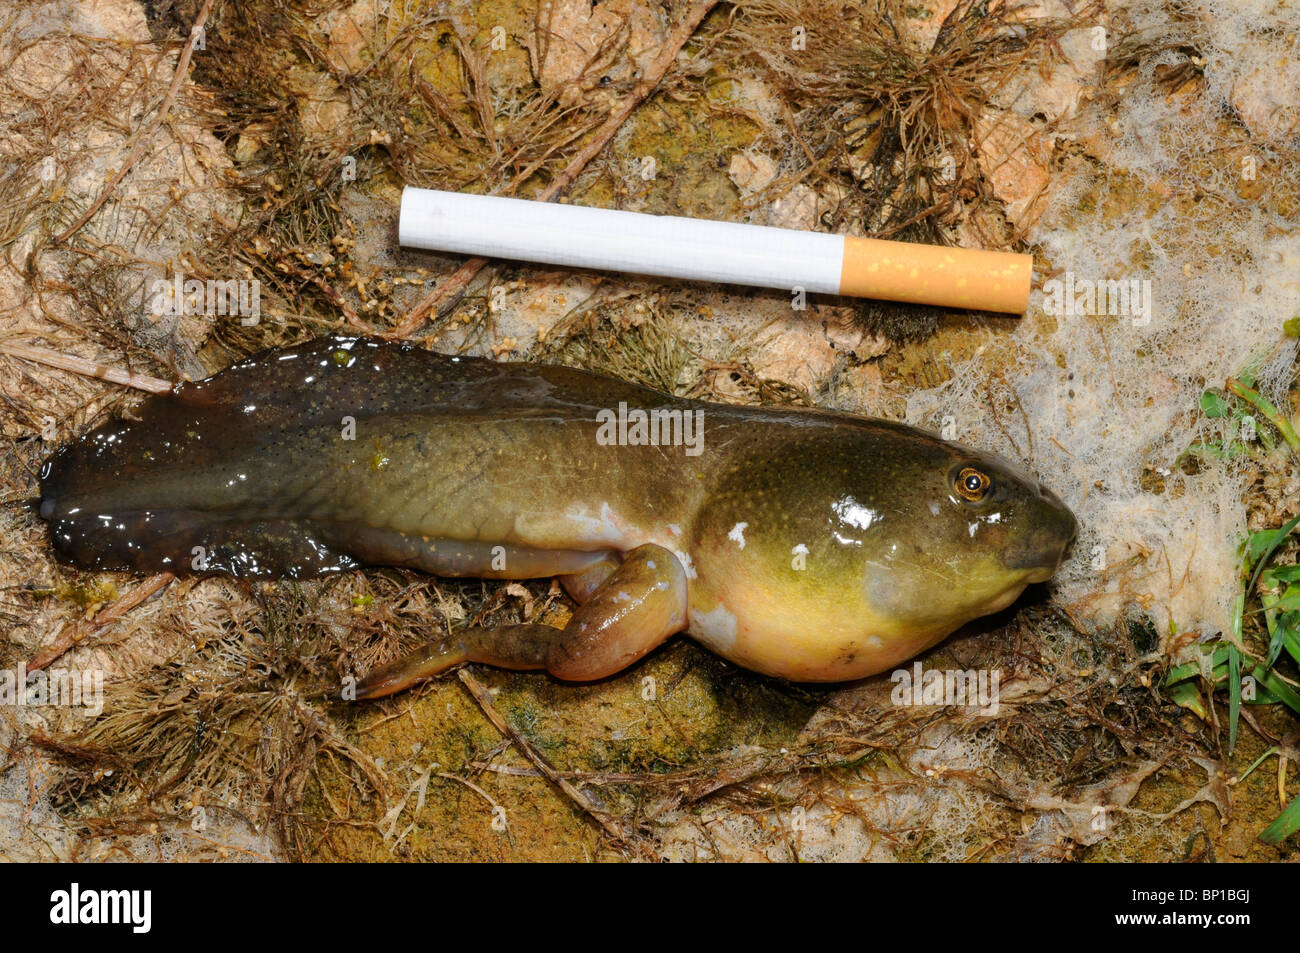 Bullfrog, American bullfrog (Lithobates catesbeianus, Rana catesbeiana), tadpole, il confronto con una sigaretta, Grecia, Creta Foto Stock